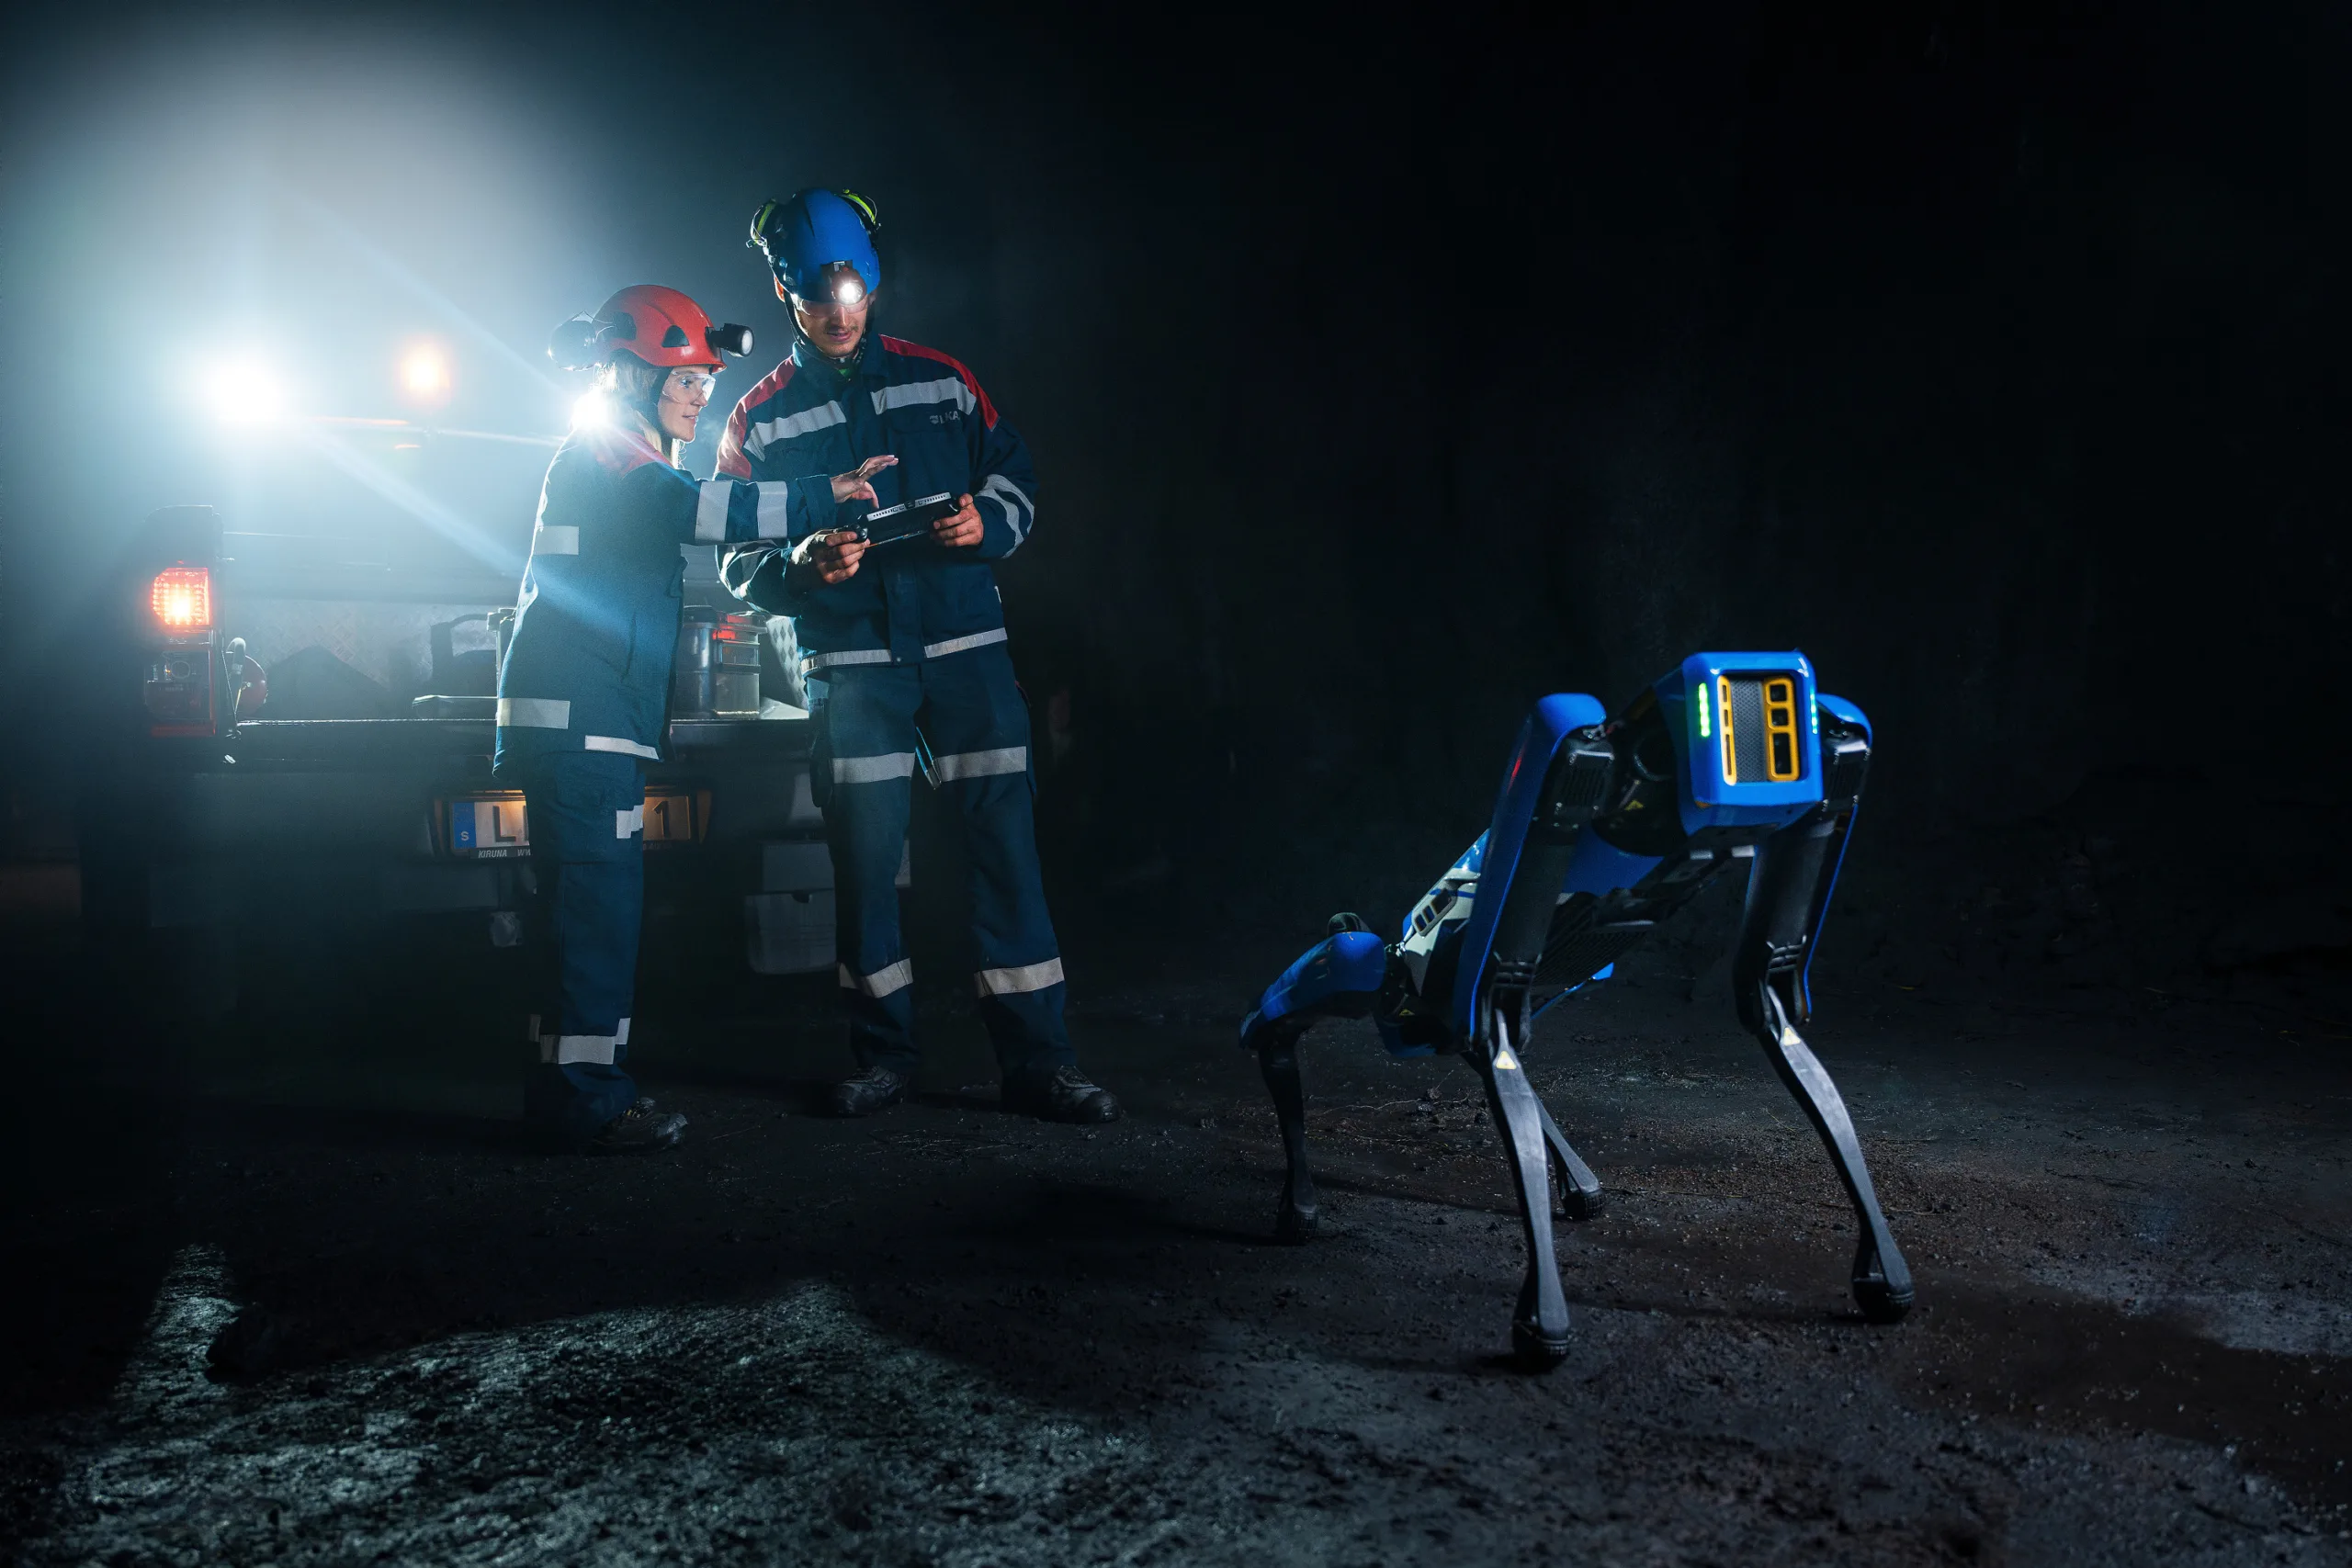 Två personer i arbetskläder och robothund i underjordsmiljö